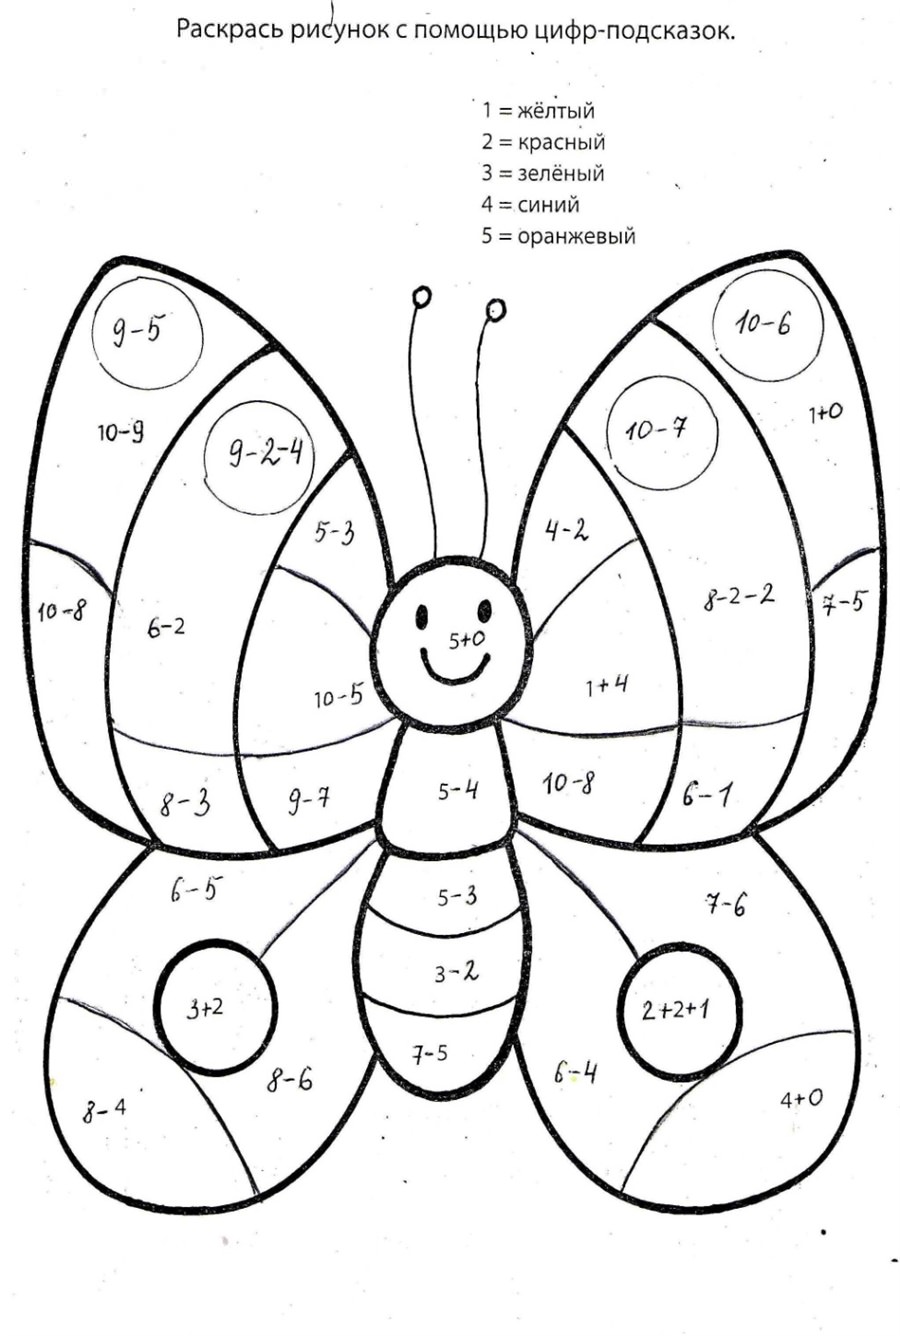 Розмальовки з прикладами метелик